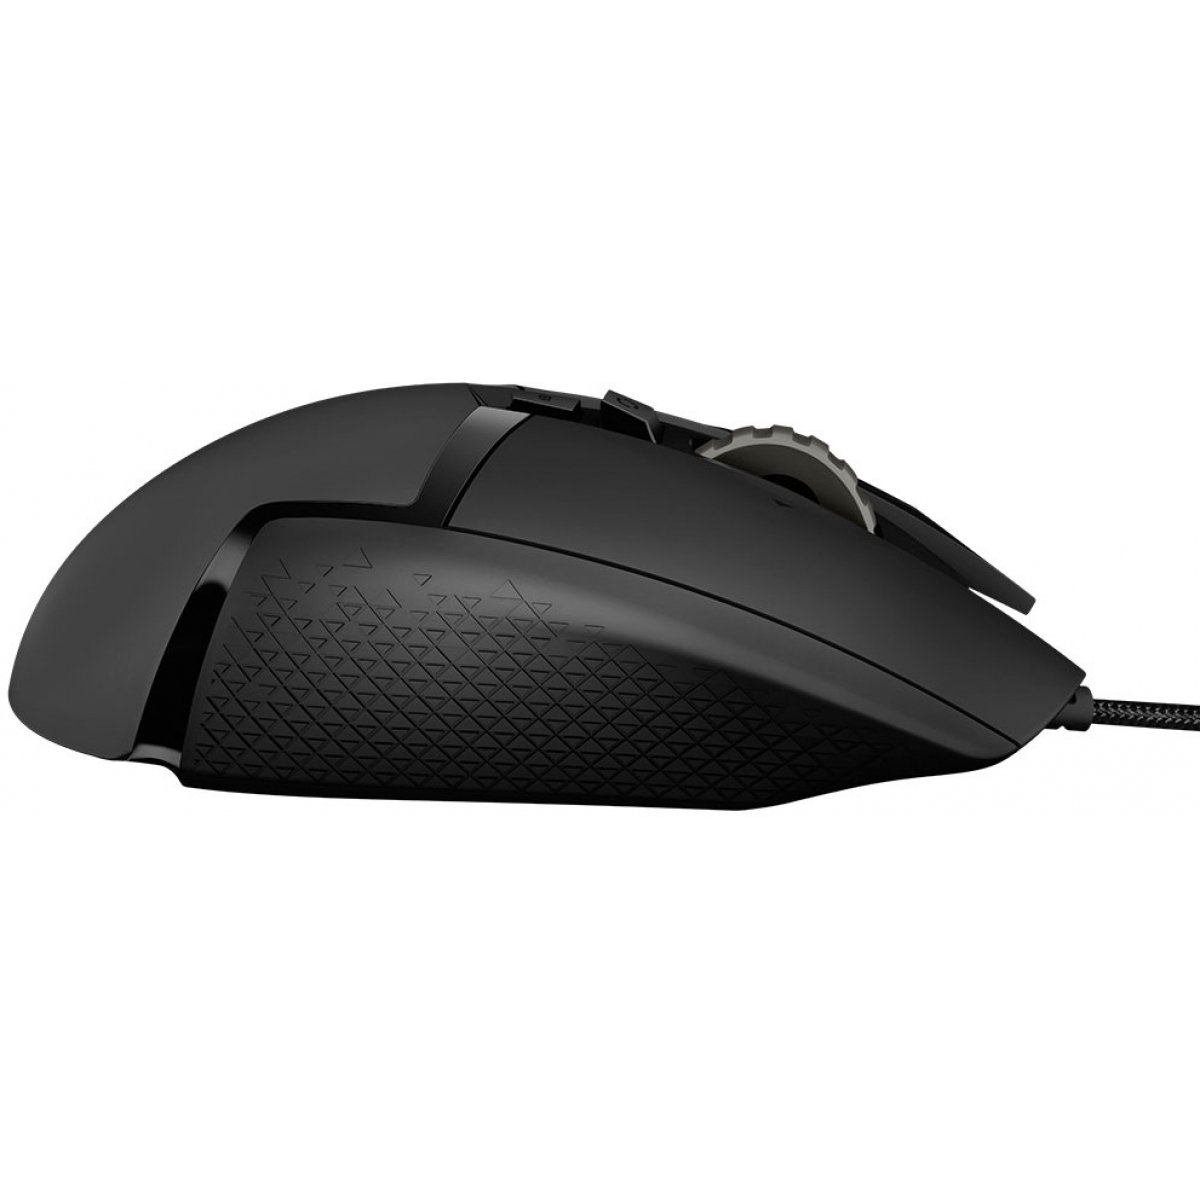 Mouse Gamer Logitech Hero G502, 25600 DPI, 11 Botões, Ajuste de Peso, RGB, Black, 910-005550